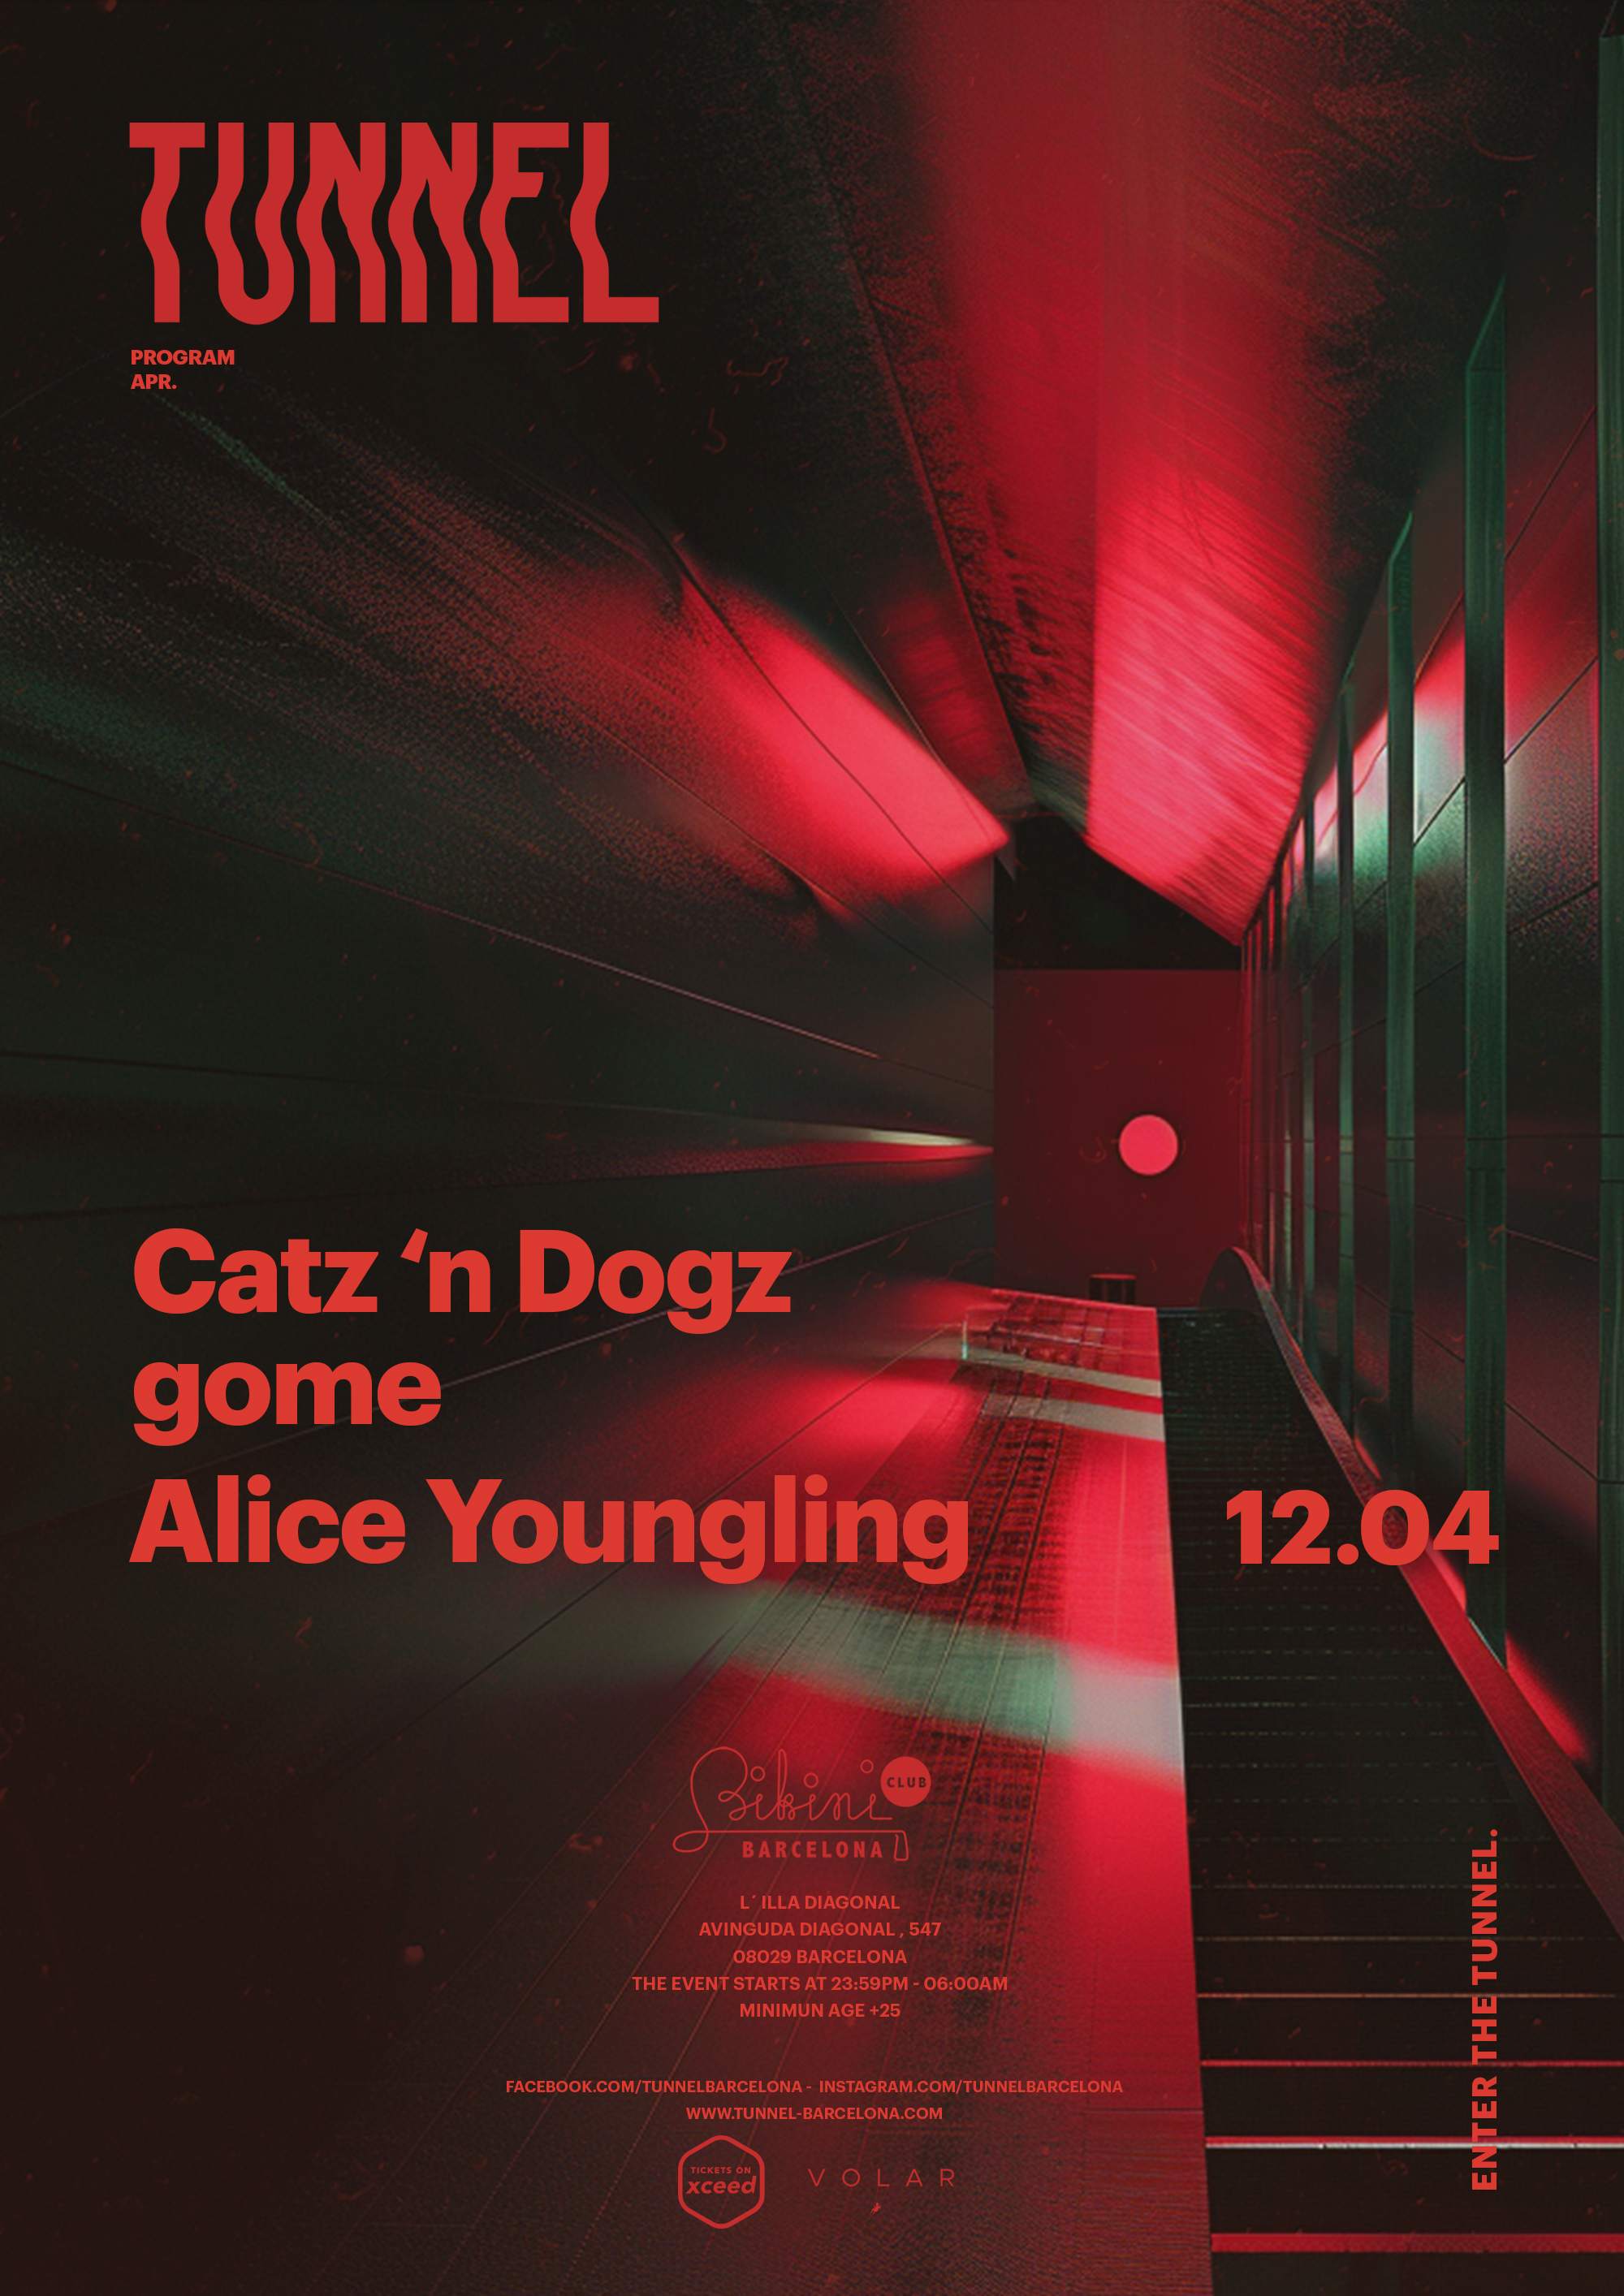 Tunnel pres. Catz'n Dogz, gome, Alice Youngling - フライヤー表